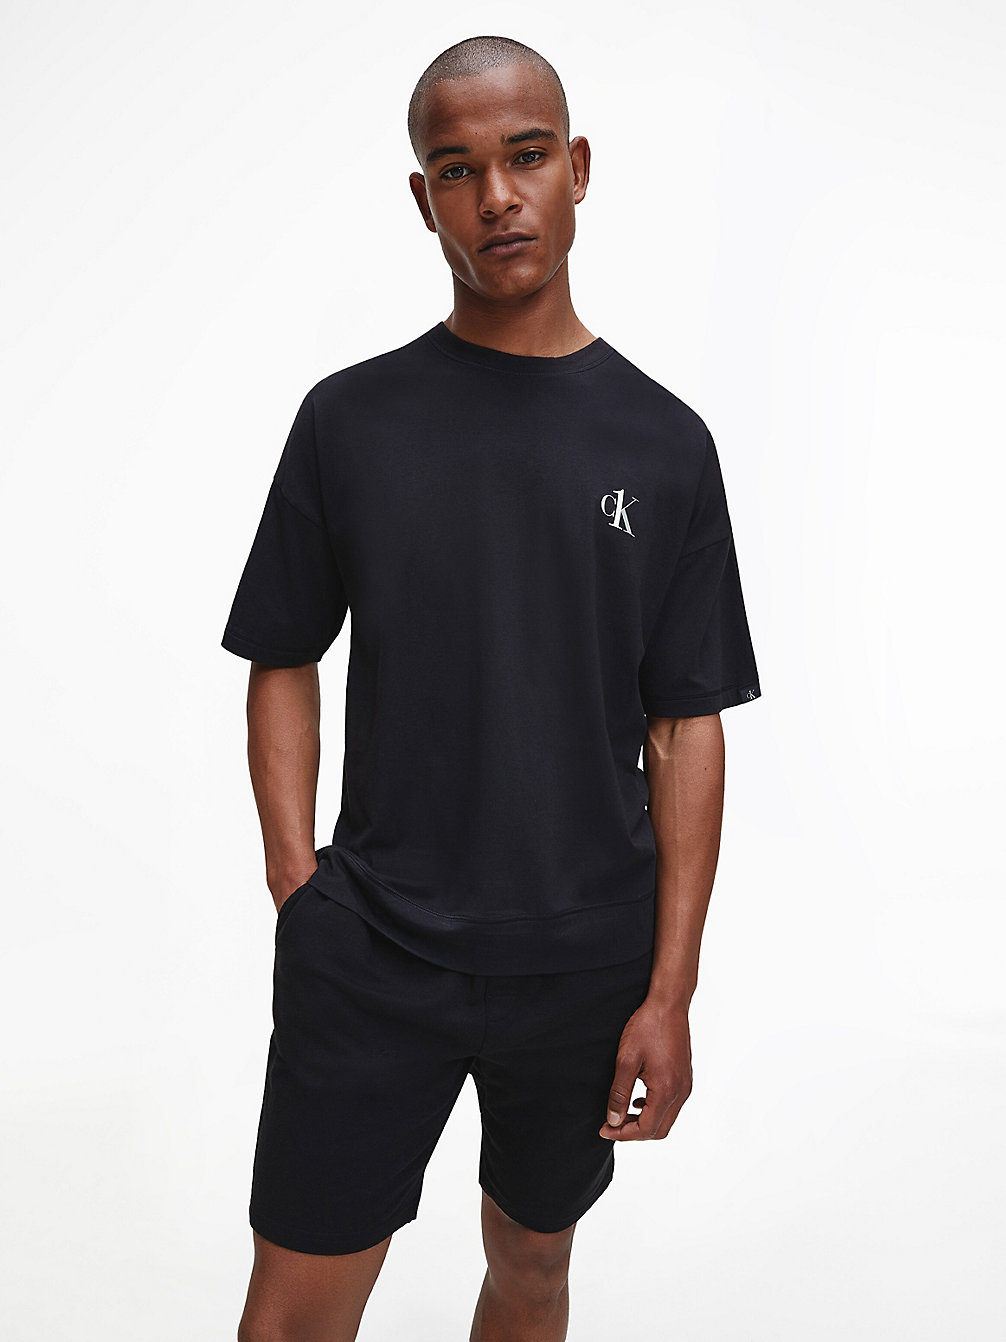 BLACK > Lounge-T-Shirt - CK One > undefined men - Calvin Klein